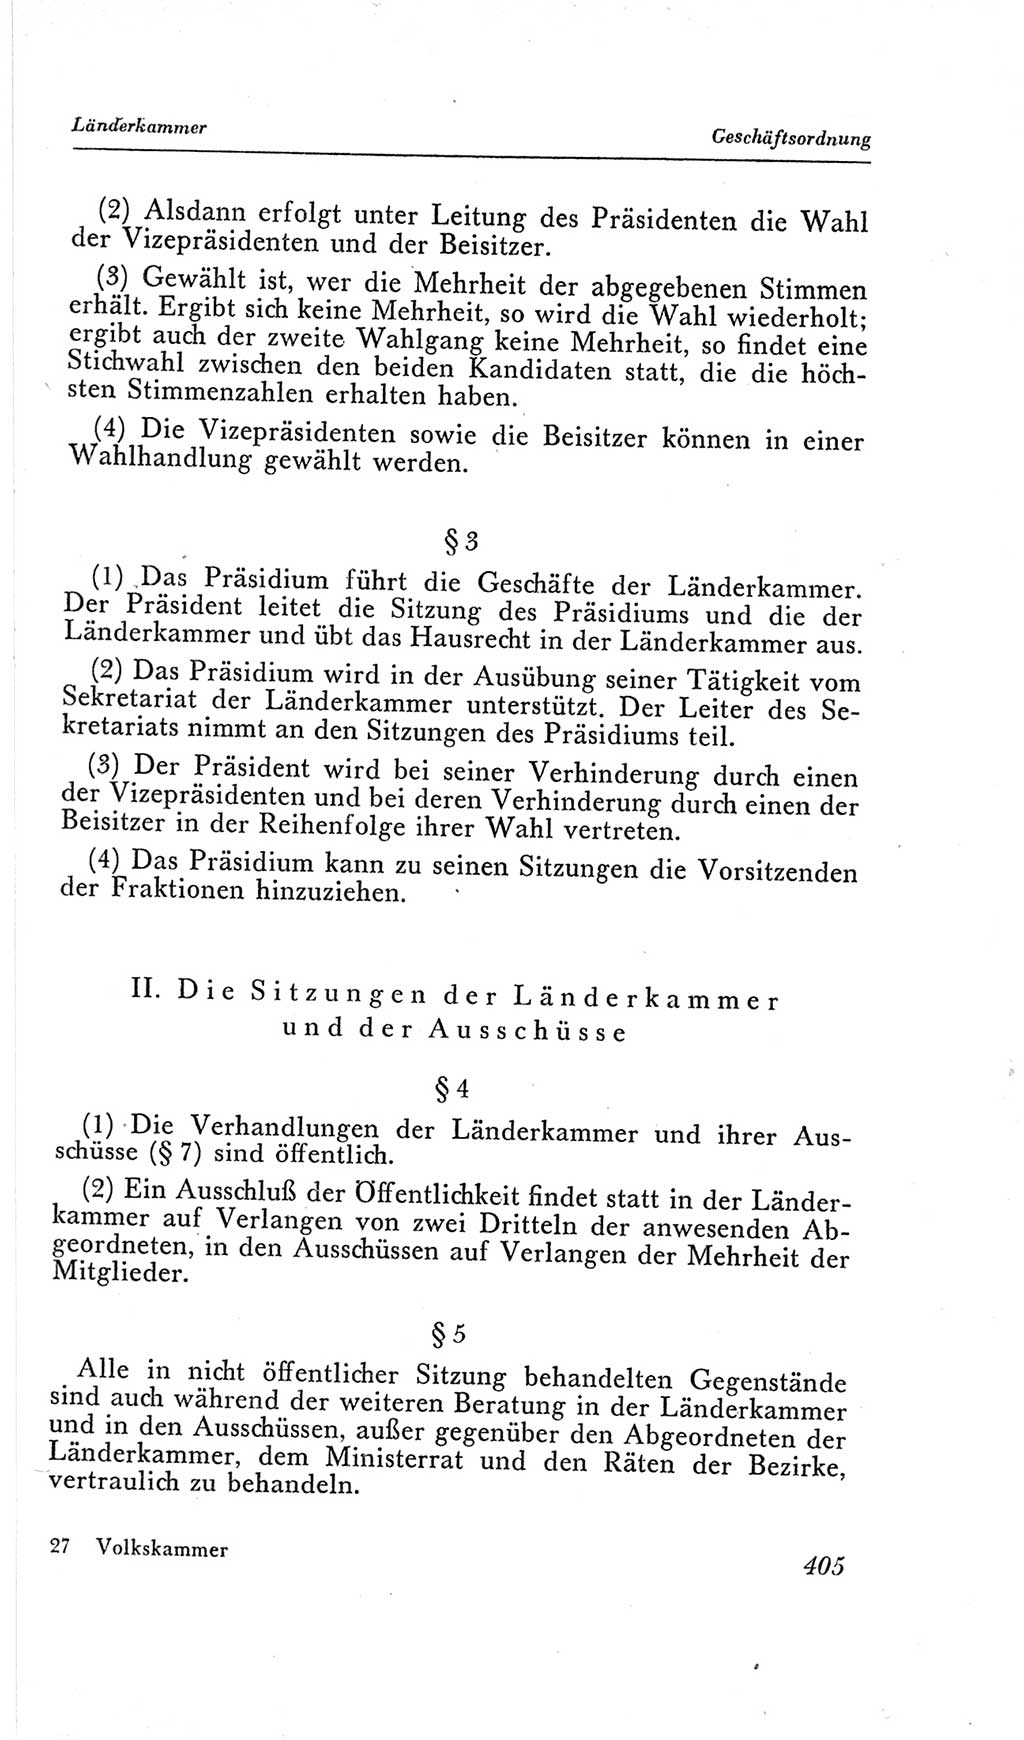 Handbuch der Volkskammer (VK) der Deutschen Demokratischen Republik (DDR), 2. Wahlperiode 1954-1958, Seite 405 (Hdb. VK. DDR, 2. WP. 1954-1958, S. 405)